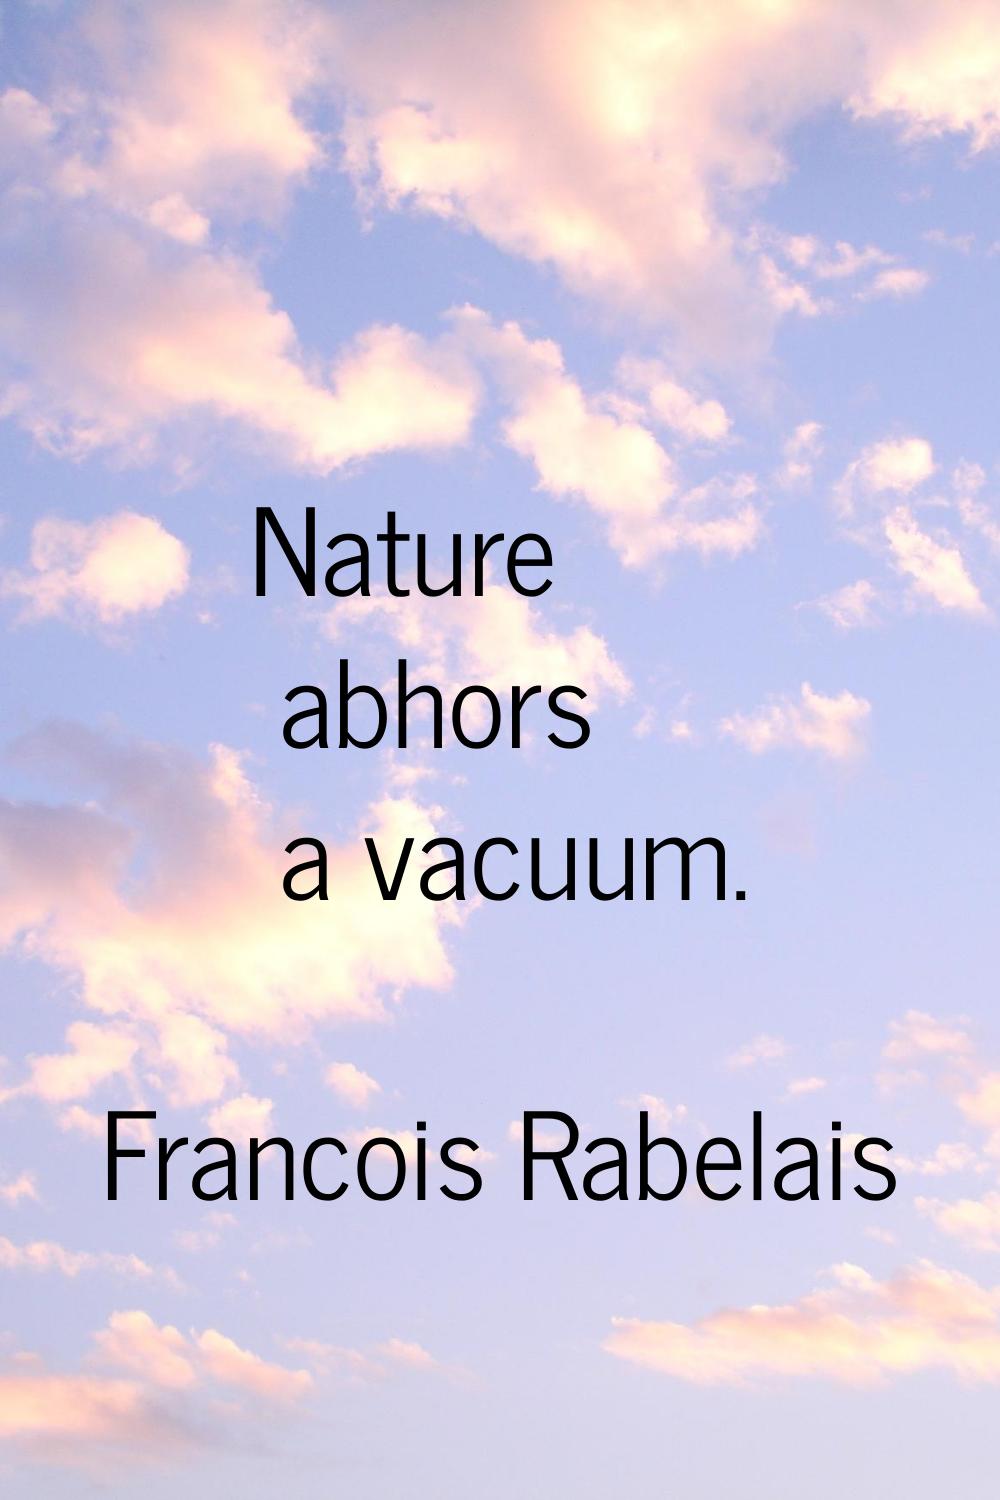 Nature abhors a vacuum.